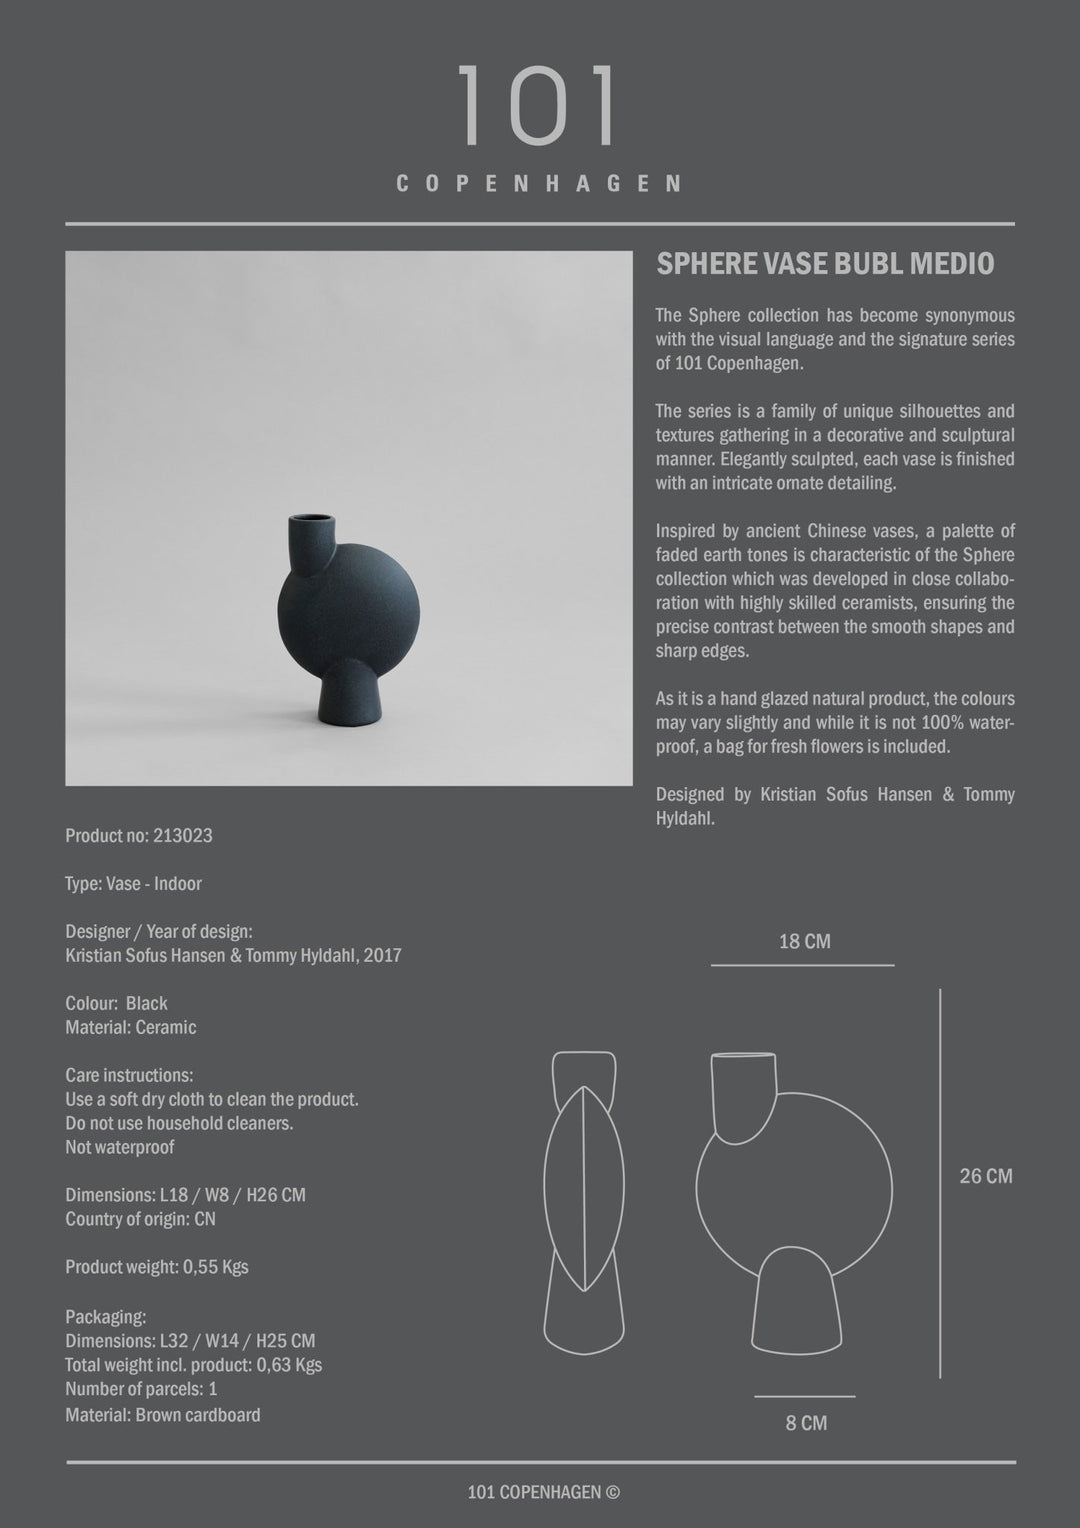 101 Copenhagen Sphere Vase Bubl, Medio - $70.00